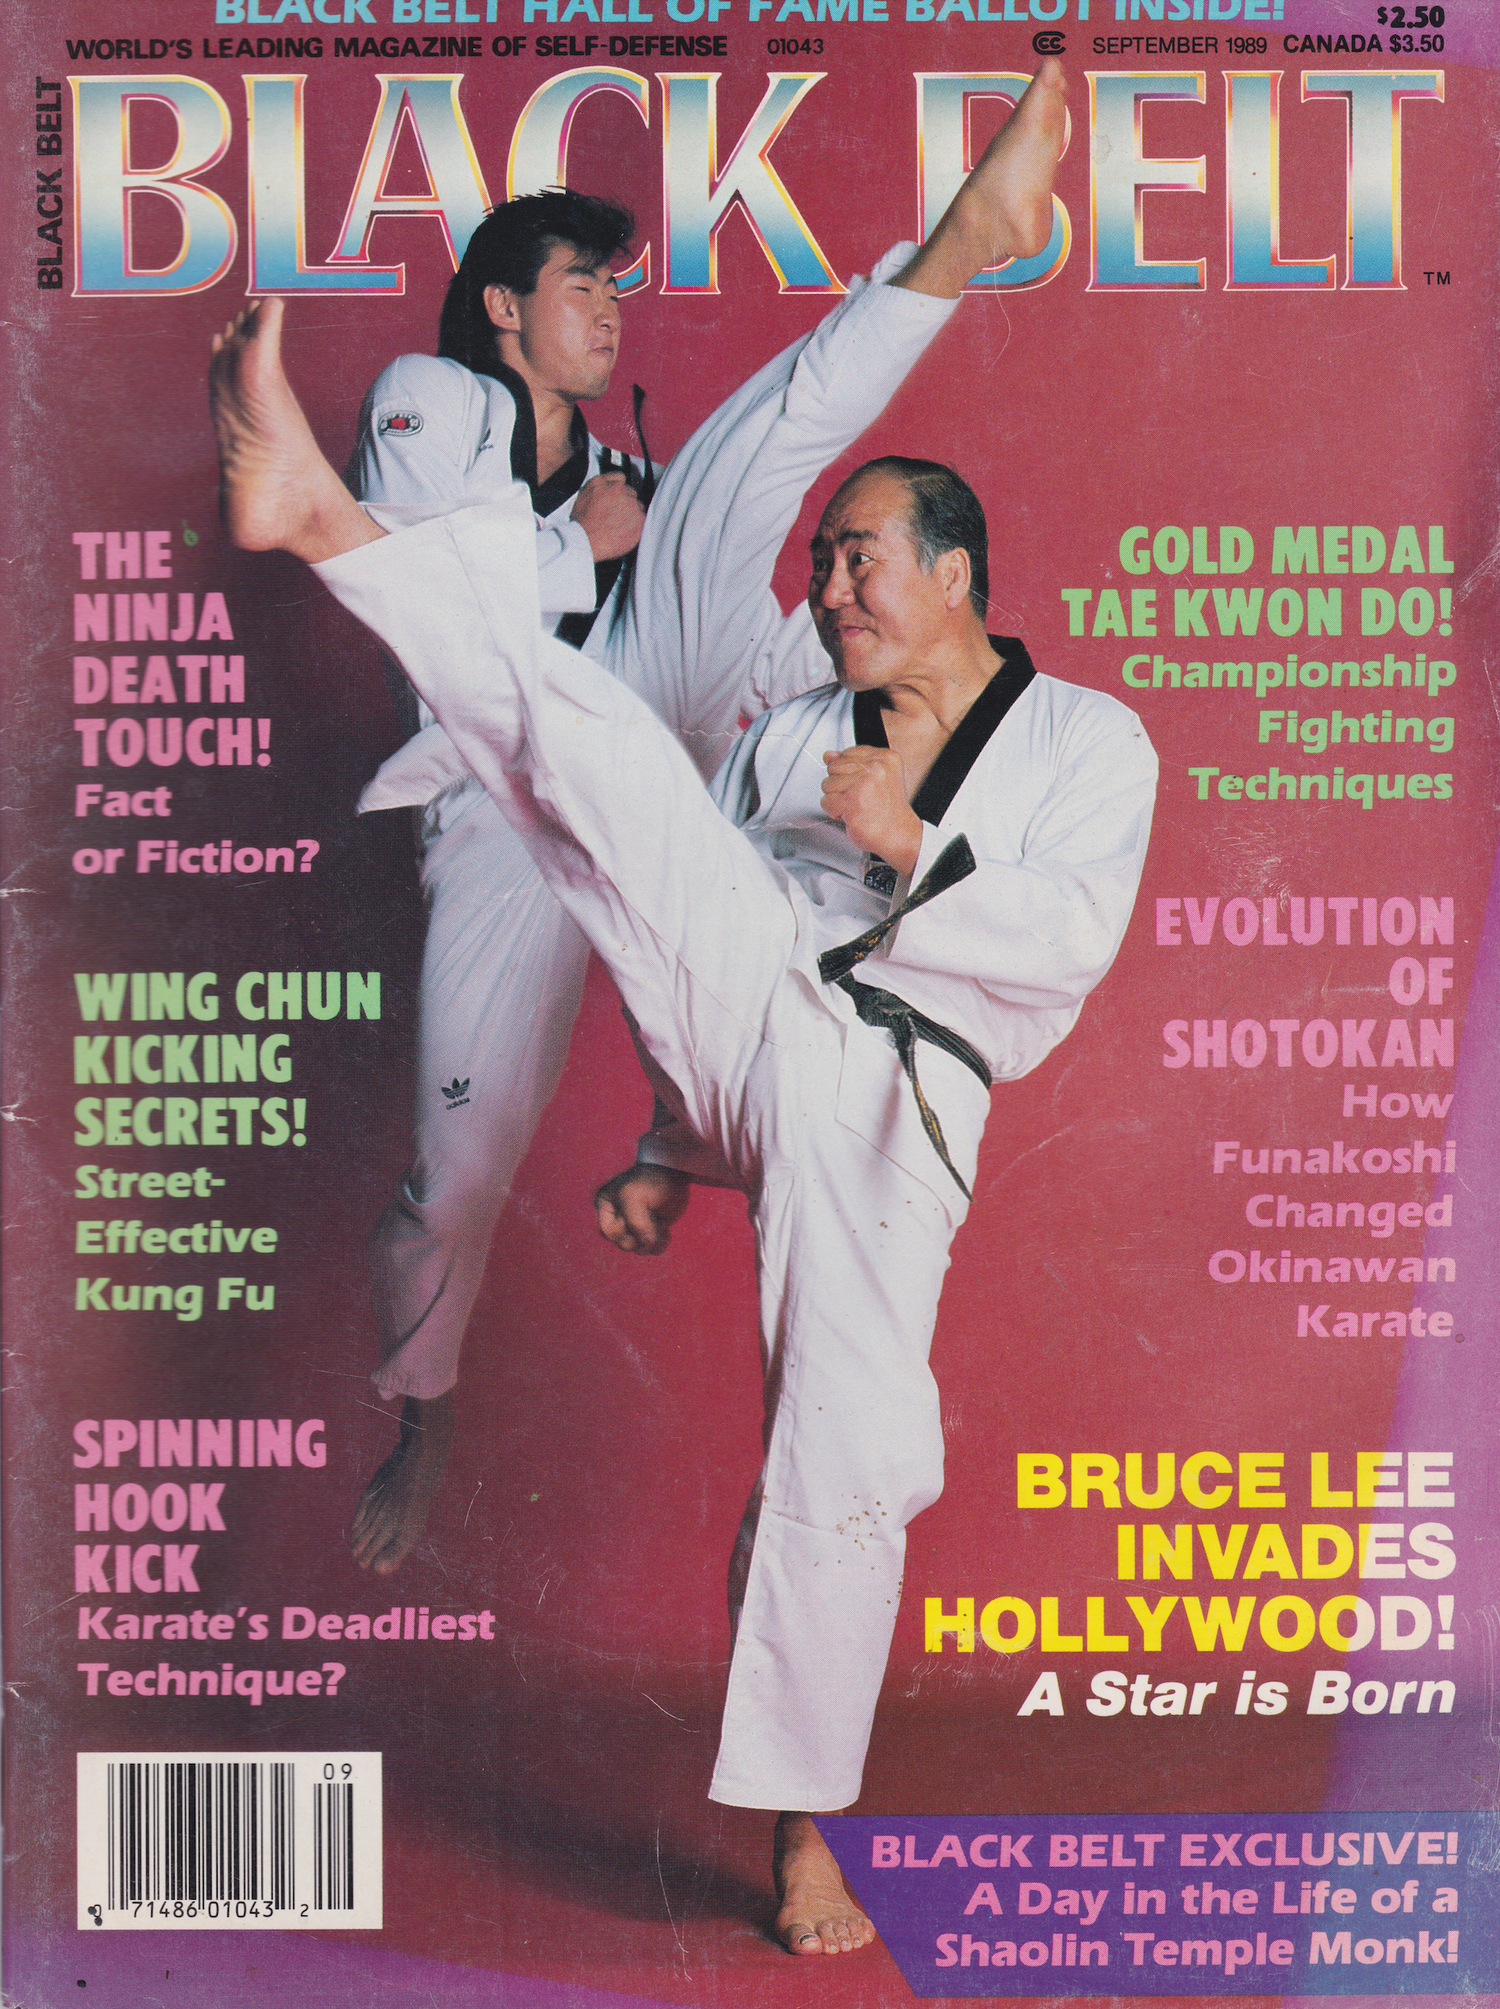 Black Belt Magazine Sept 1989 (Preowned)